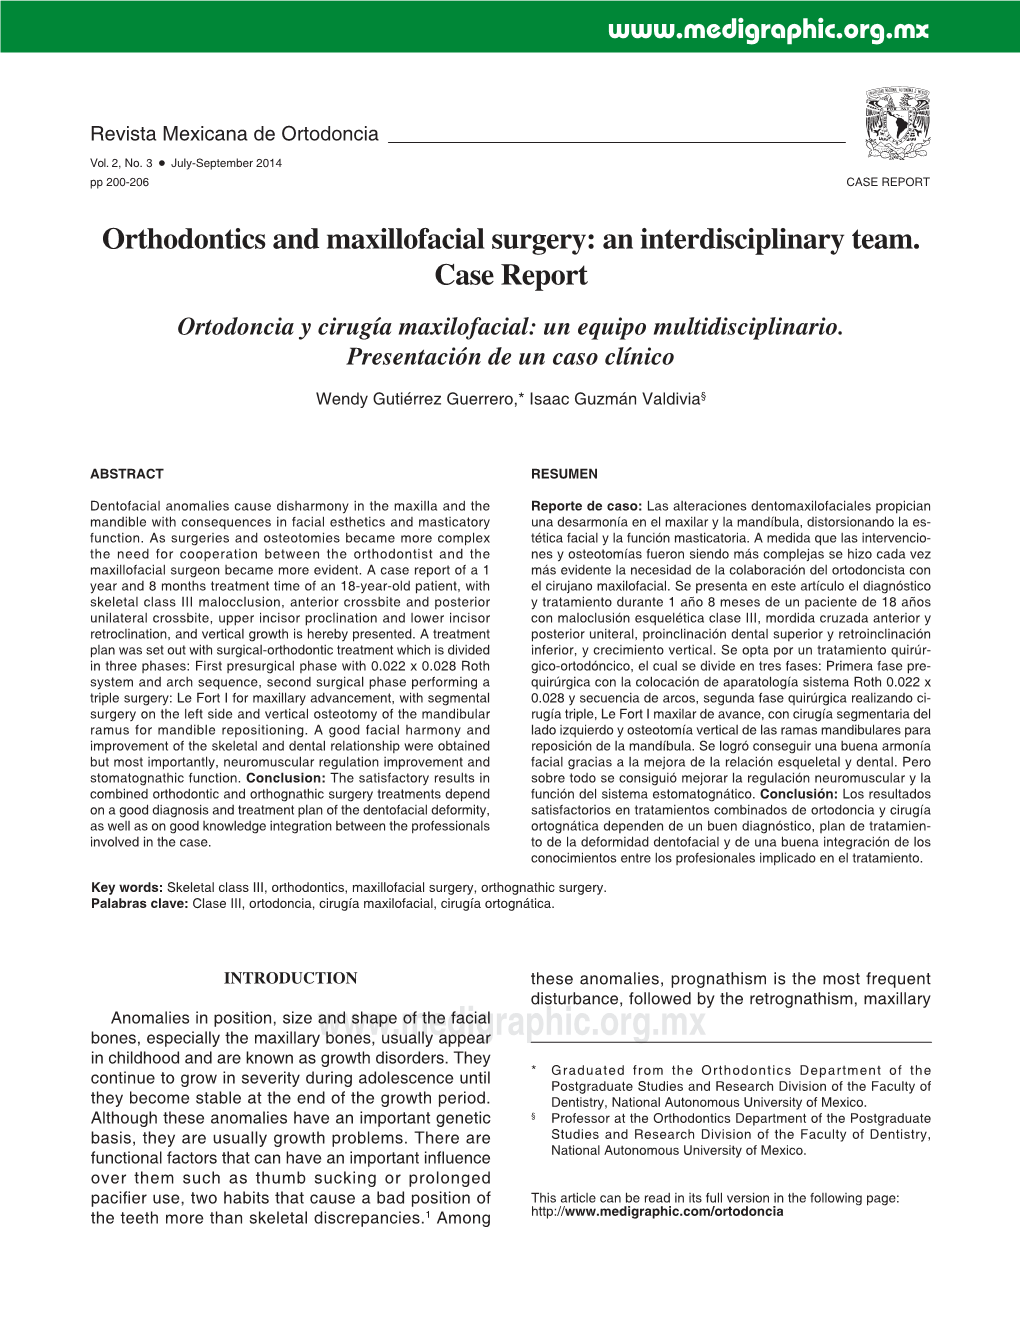 Orthodontics and Maxillofacial Surgery: an Interdisciplinary Team